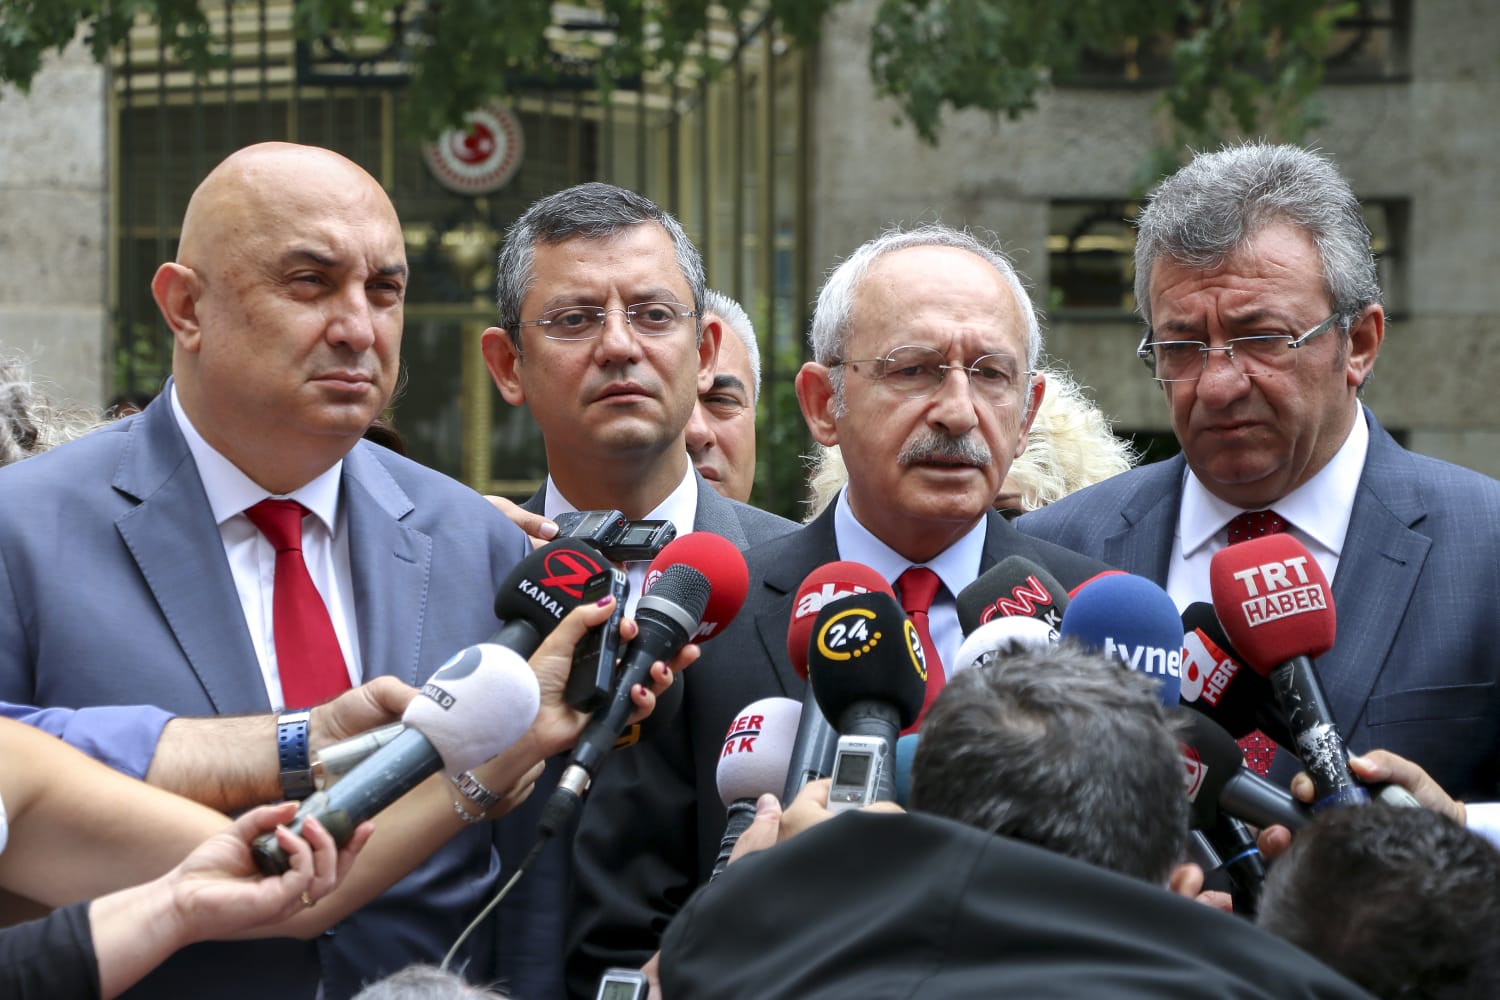 CHP’lilerden büyük tutarsızlık! Cumhurbaşkanına hakaret ’suç olmasın’ dediler Başkan Erdoğan’a tazminat davası açtılar